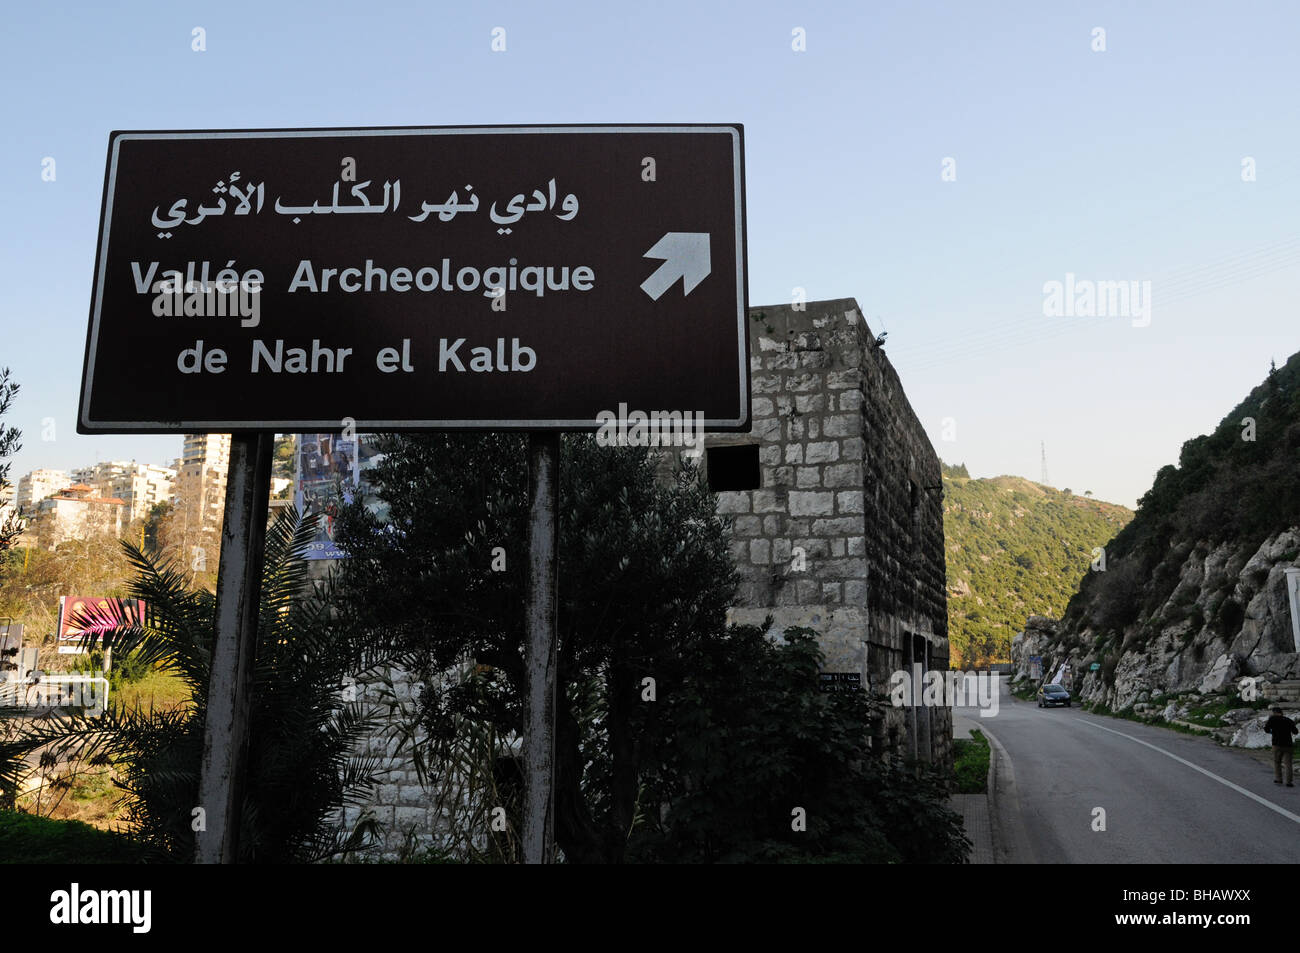 La rivière du chien (Nahr El Kalb) Vallée, une zone archéologique contenant des monuments (stèles) érigés par les armées antiques, près de Jounieh, Liban. Banque D'Images